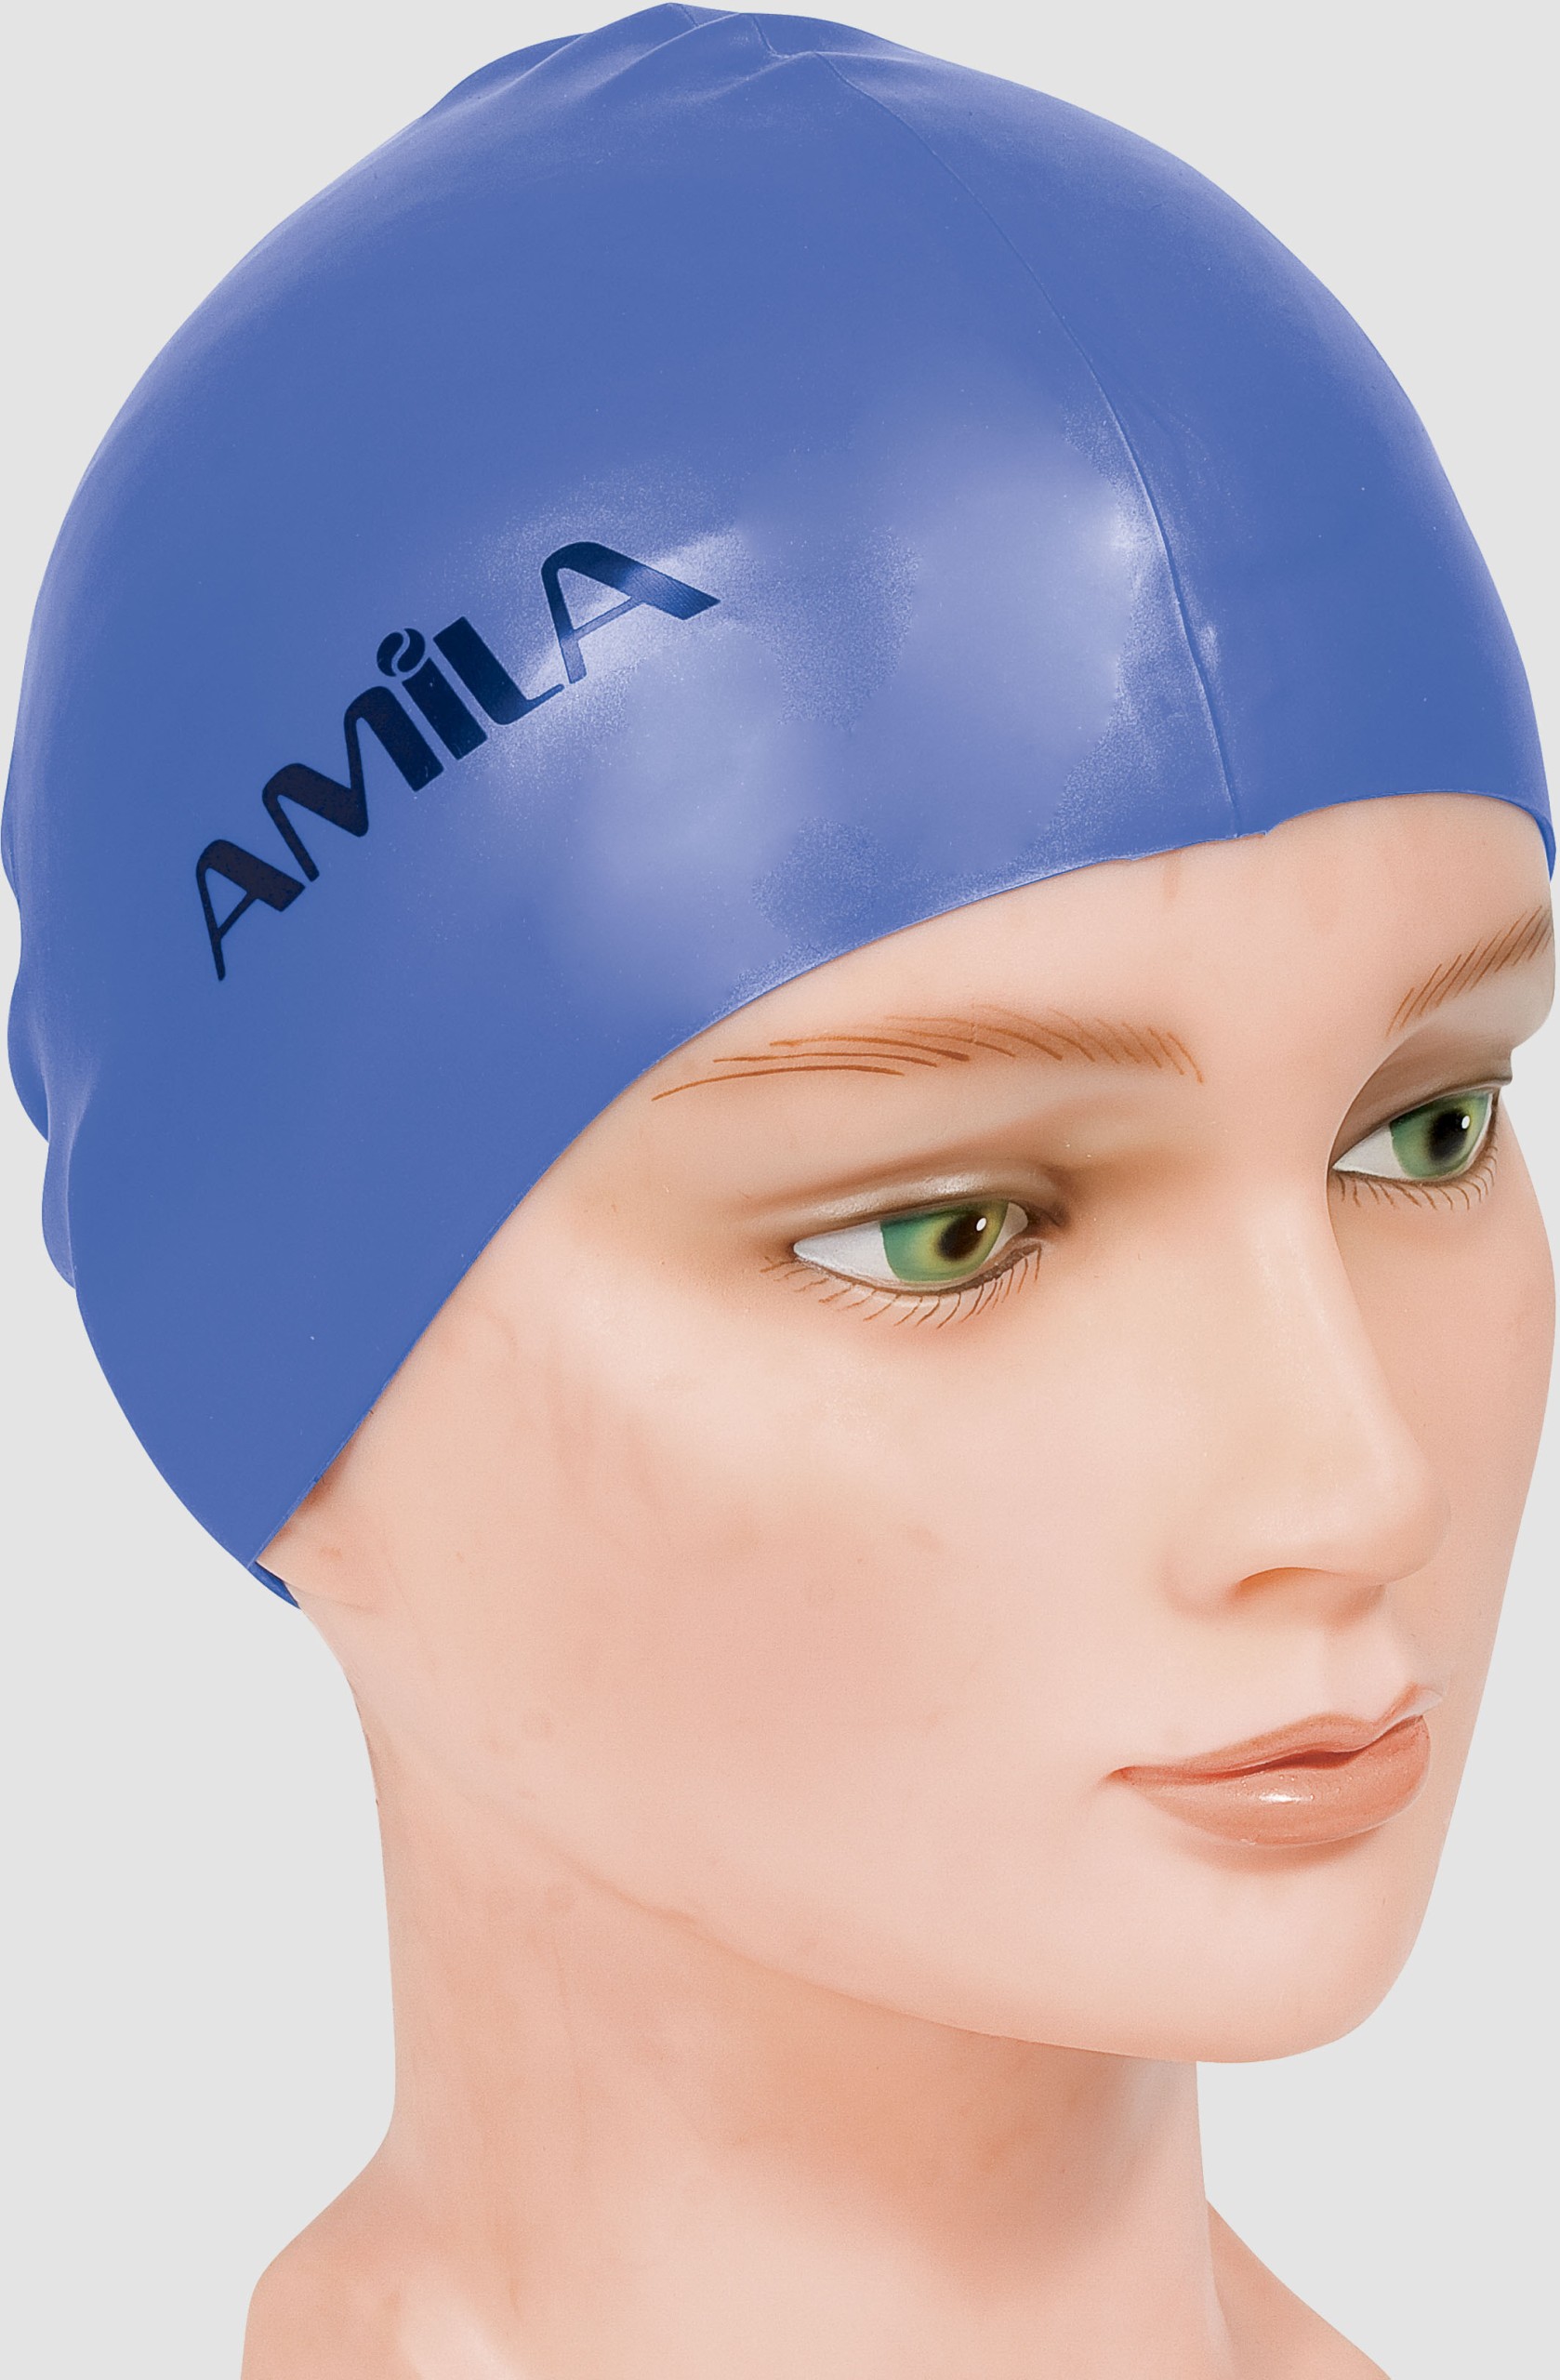 Σκουφάκι Κολύμβησης AMILA Basic Μπλε Σκούρο